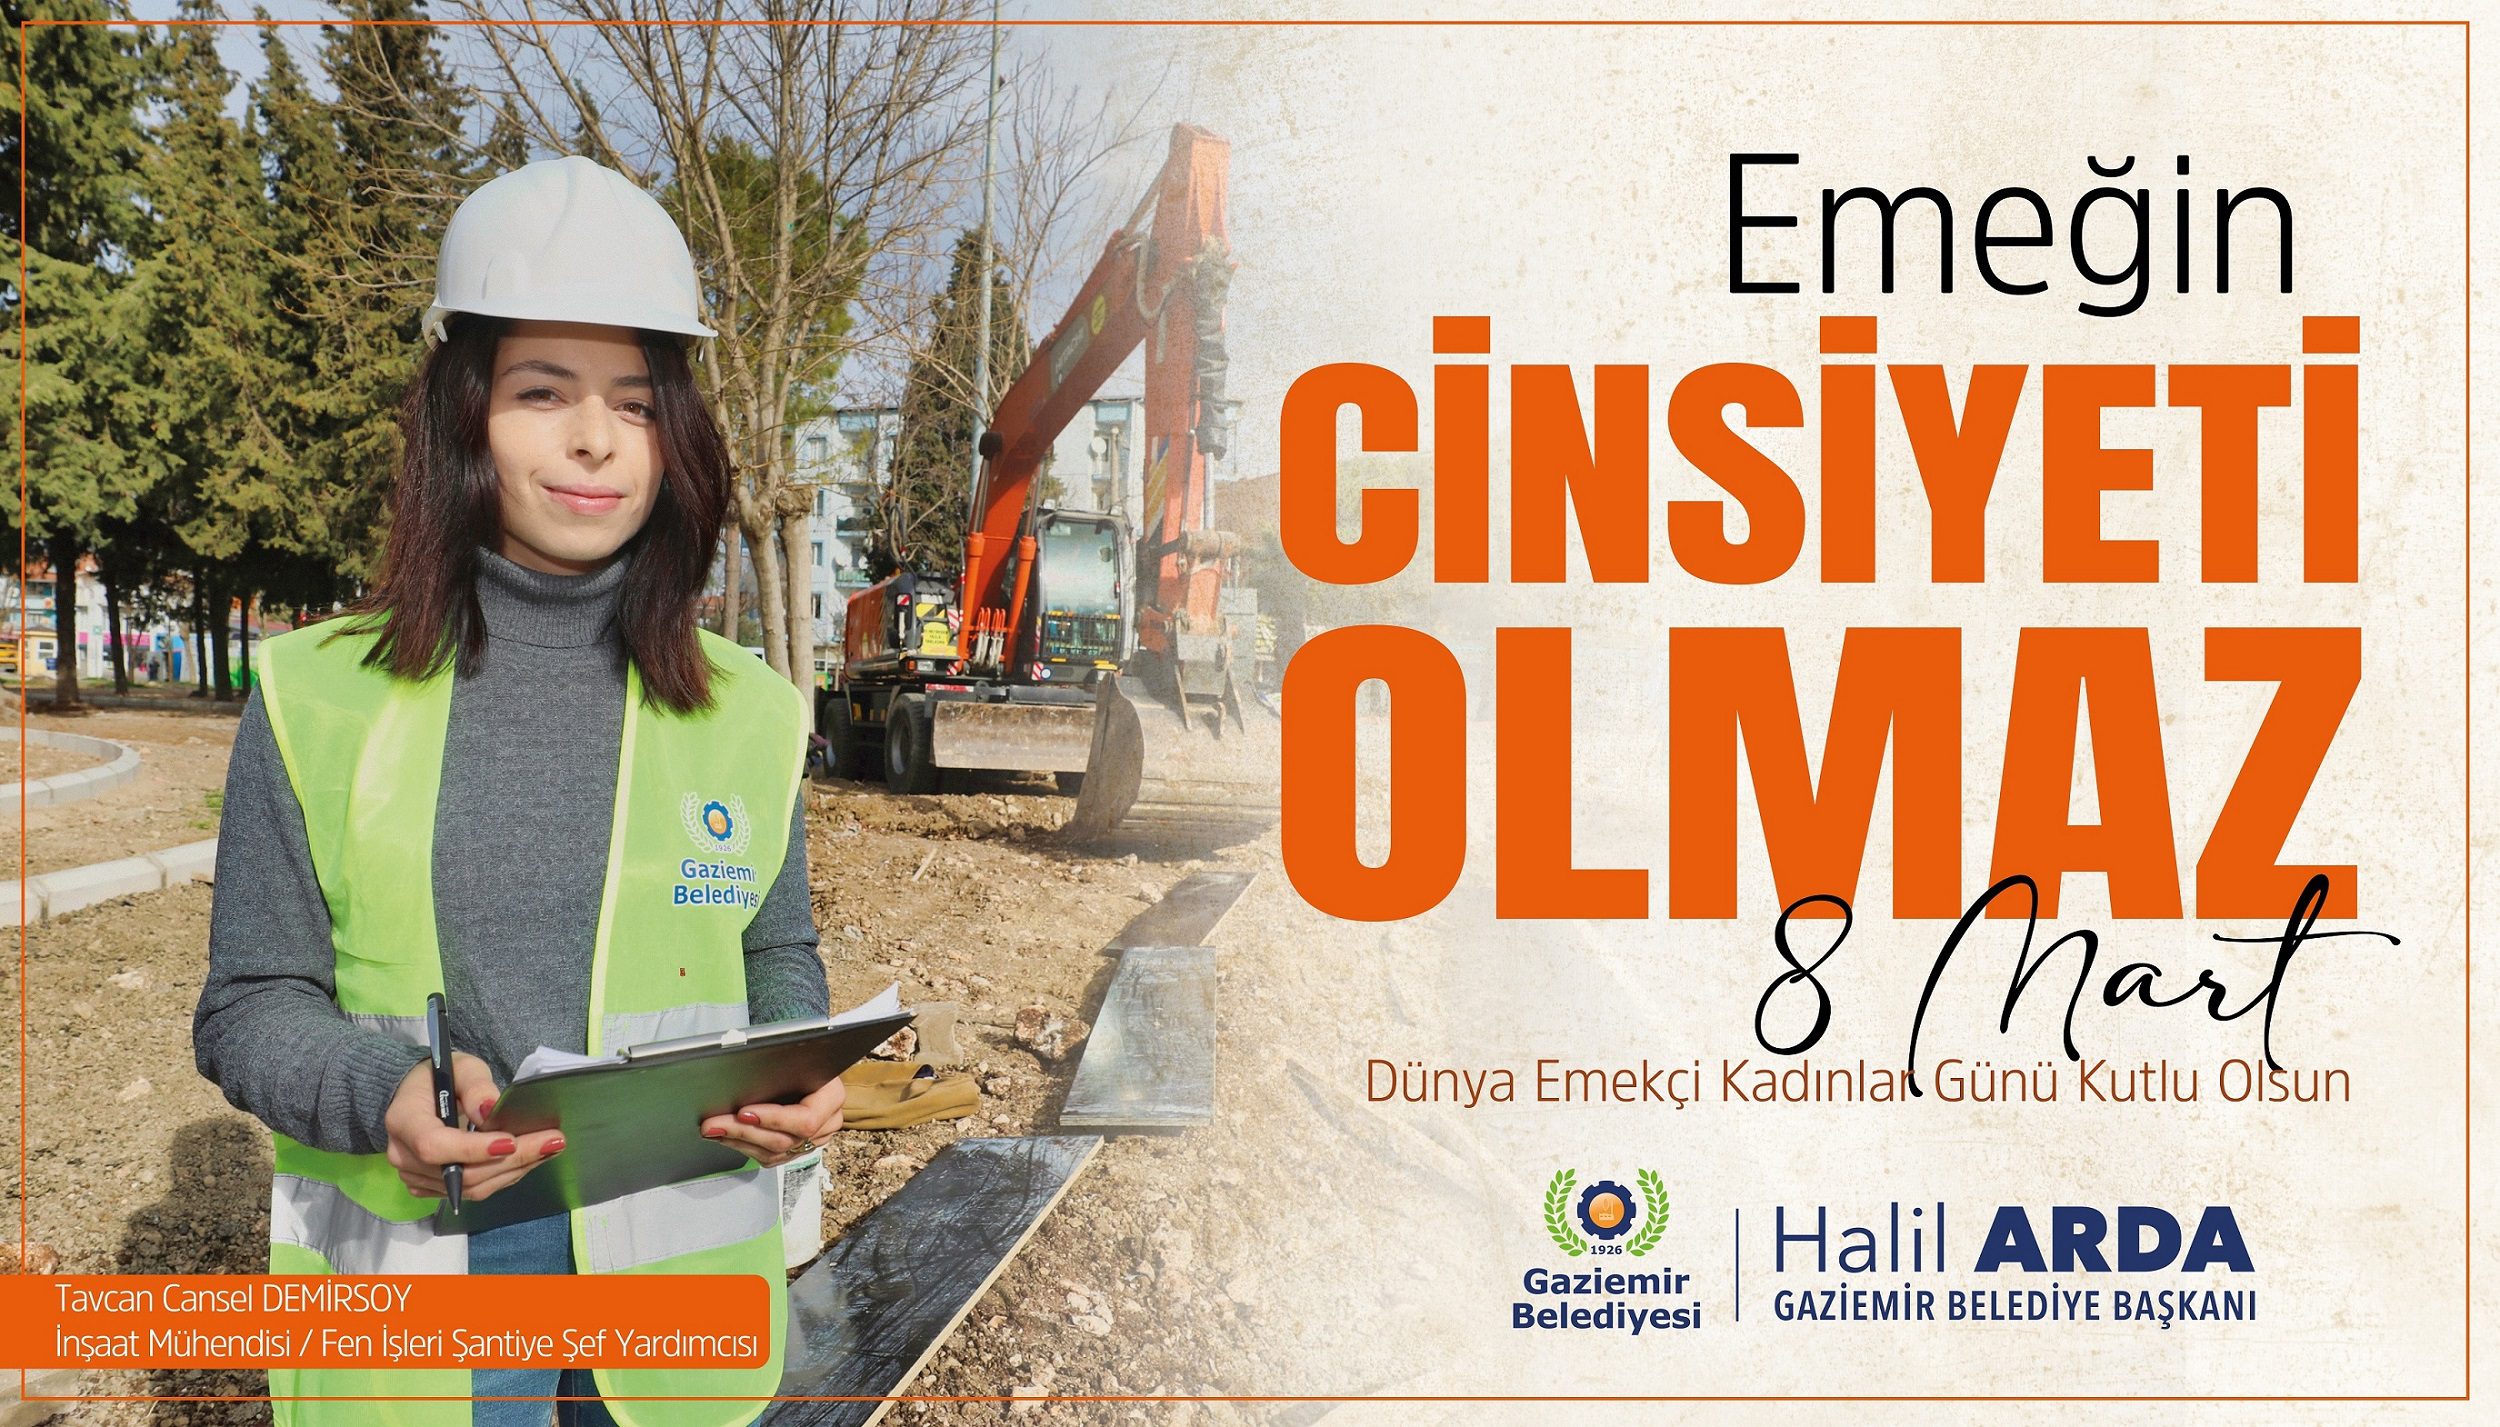 8 Mart Gaziemir Belediyesi’nin 8 Mart Dünya Emekçi Kadınlar Günü için hazırladığı ve belediyenin kadın çalışanlarının fotoğraflarına yer verilen görsel çalışmayla, kadınların her mesleği yapacağına dikkat çekildi.